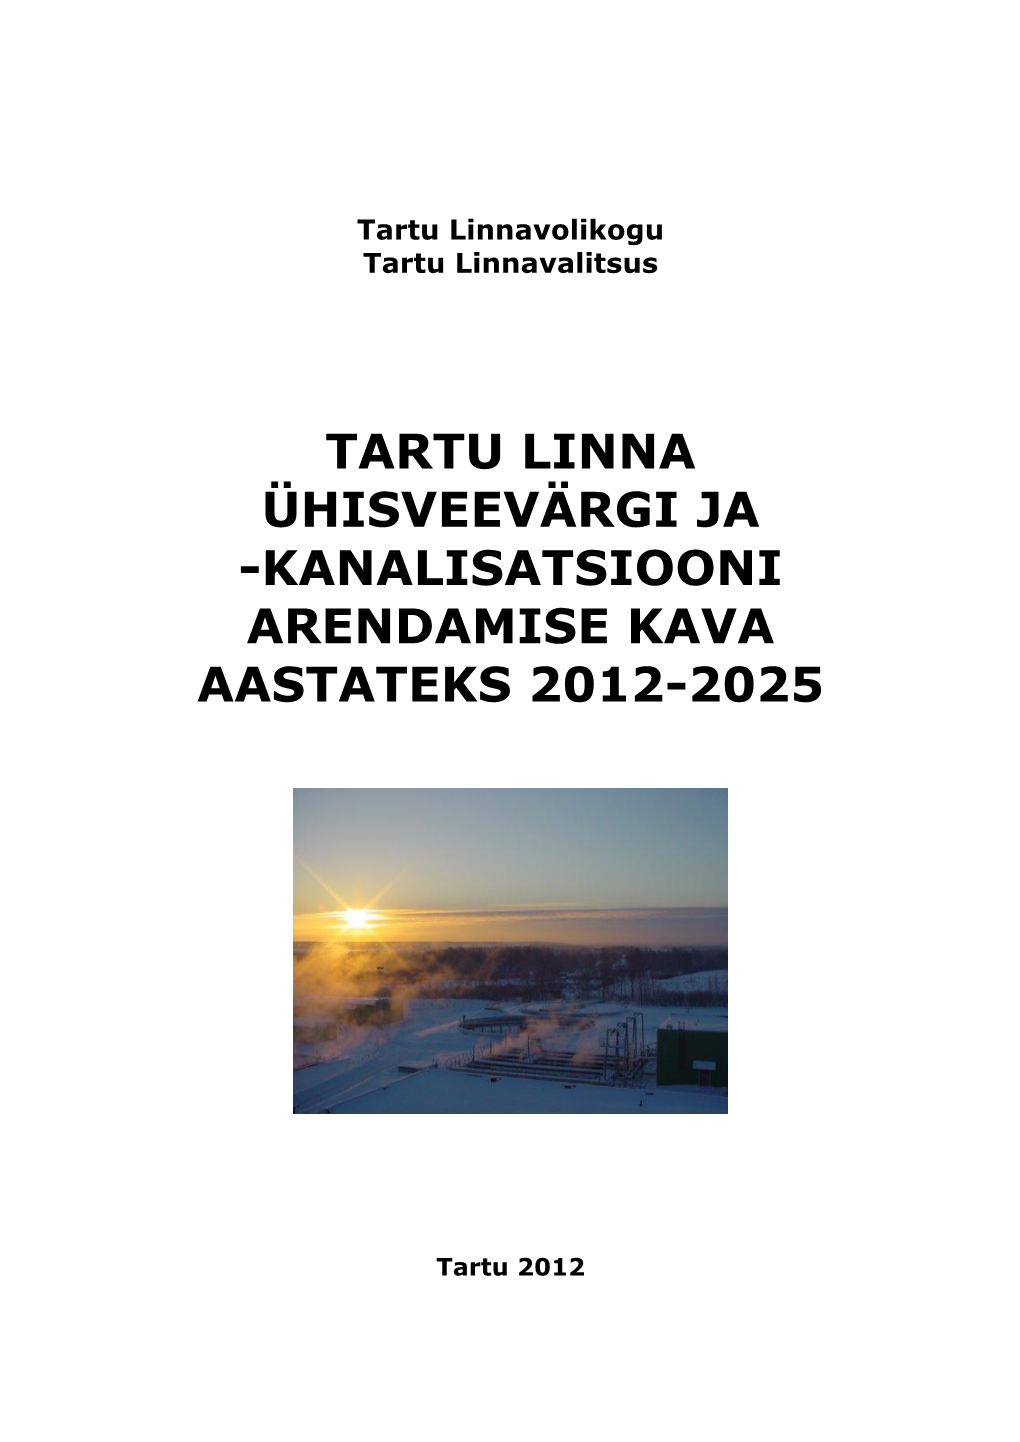 Tartu Linna Ühisveevärgi Ja -Kanalisatsiooni Arendamise Kava Aastateks 2012-2025